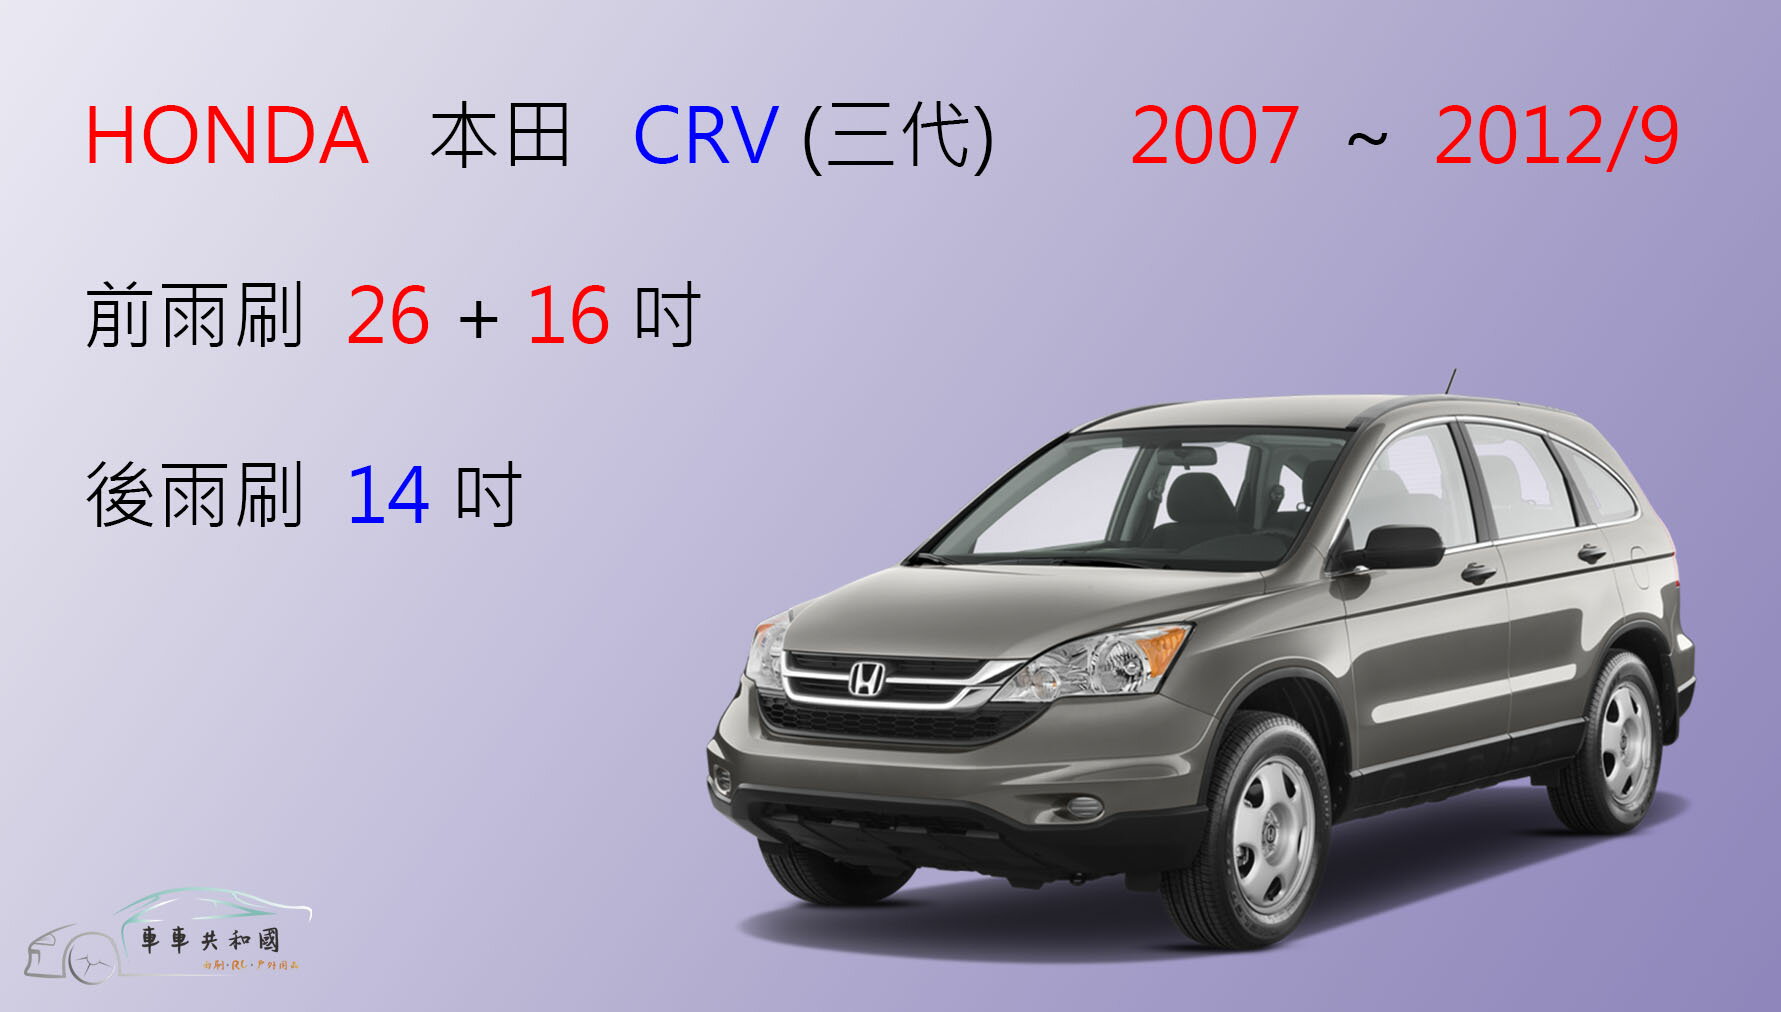 【車車共和國】HONDA 本田 CRV 3 CR-V 3代 CRV3 軟骨雨刷 前雨刷 後雨刷 雨刷錠